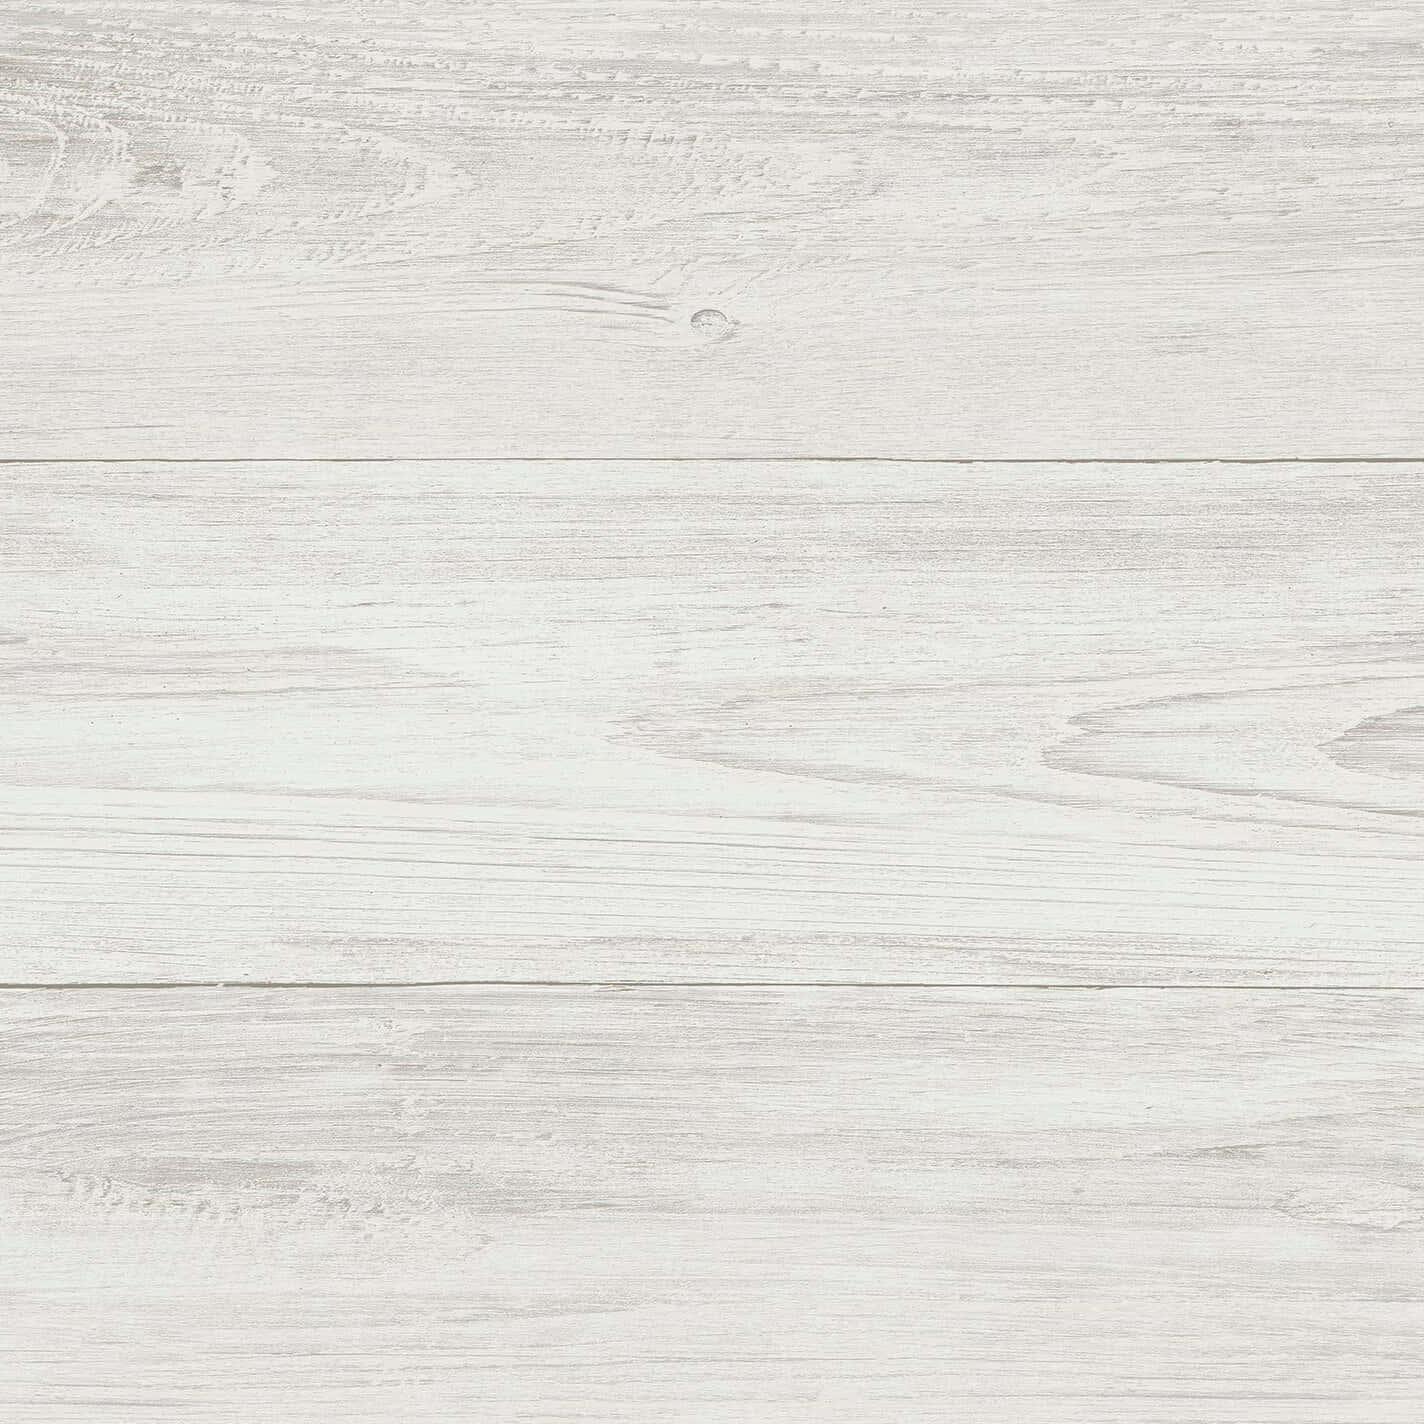 Wooden Light Gray Iphone Wallpaper